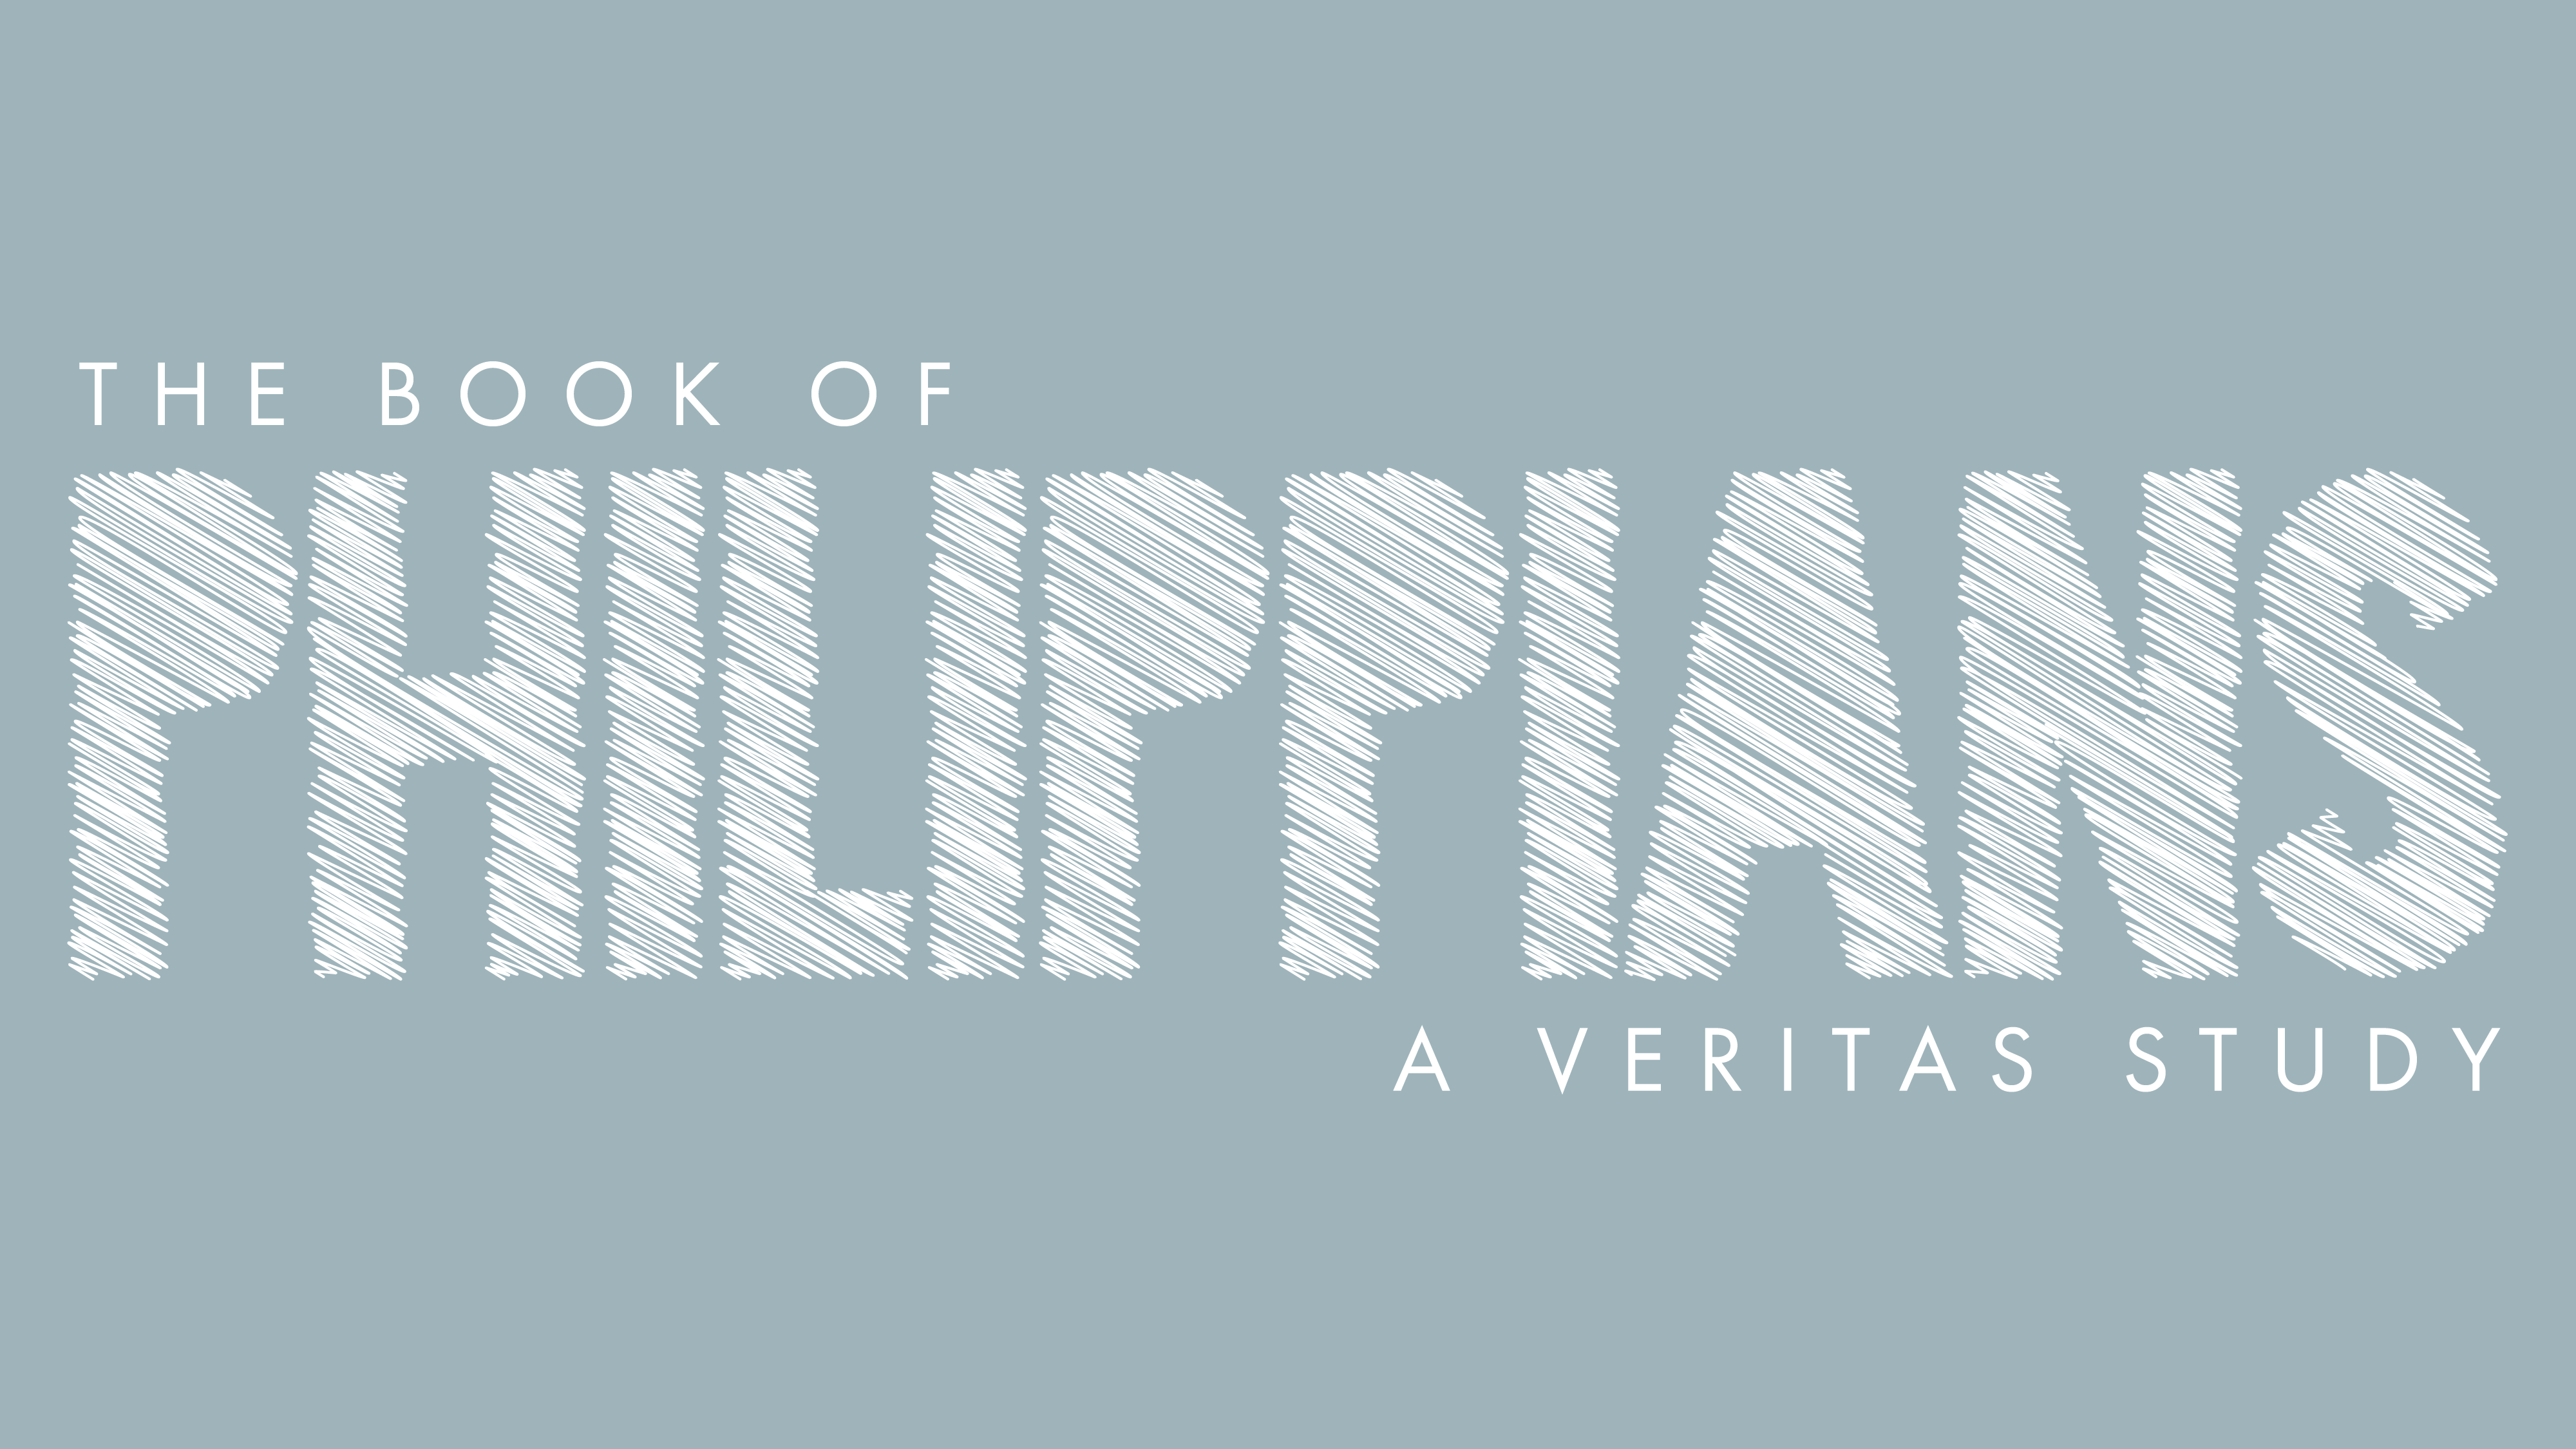 Veritas Study: Philippians